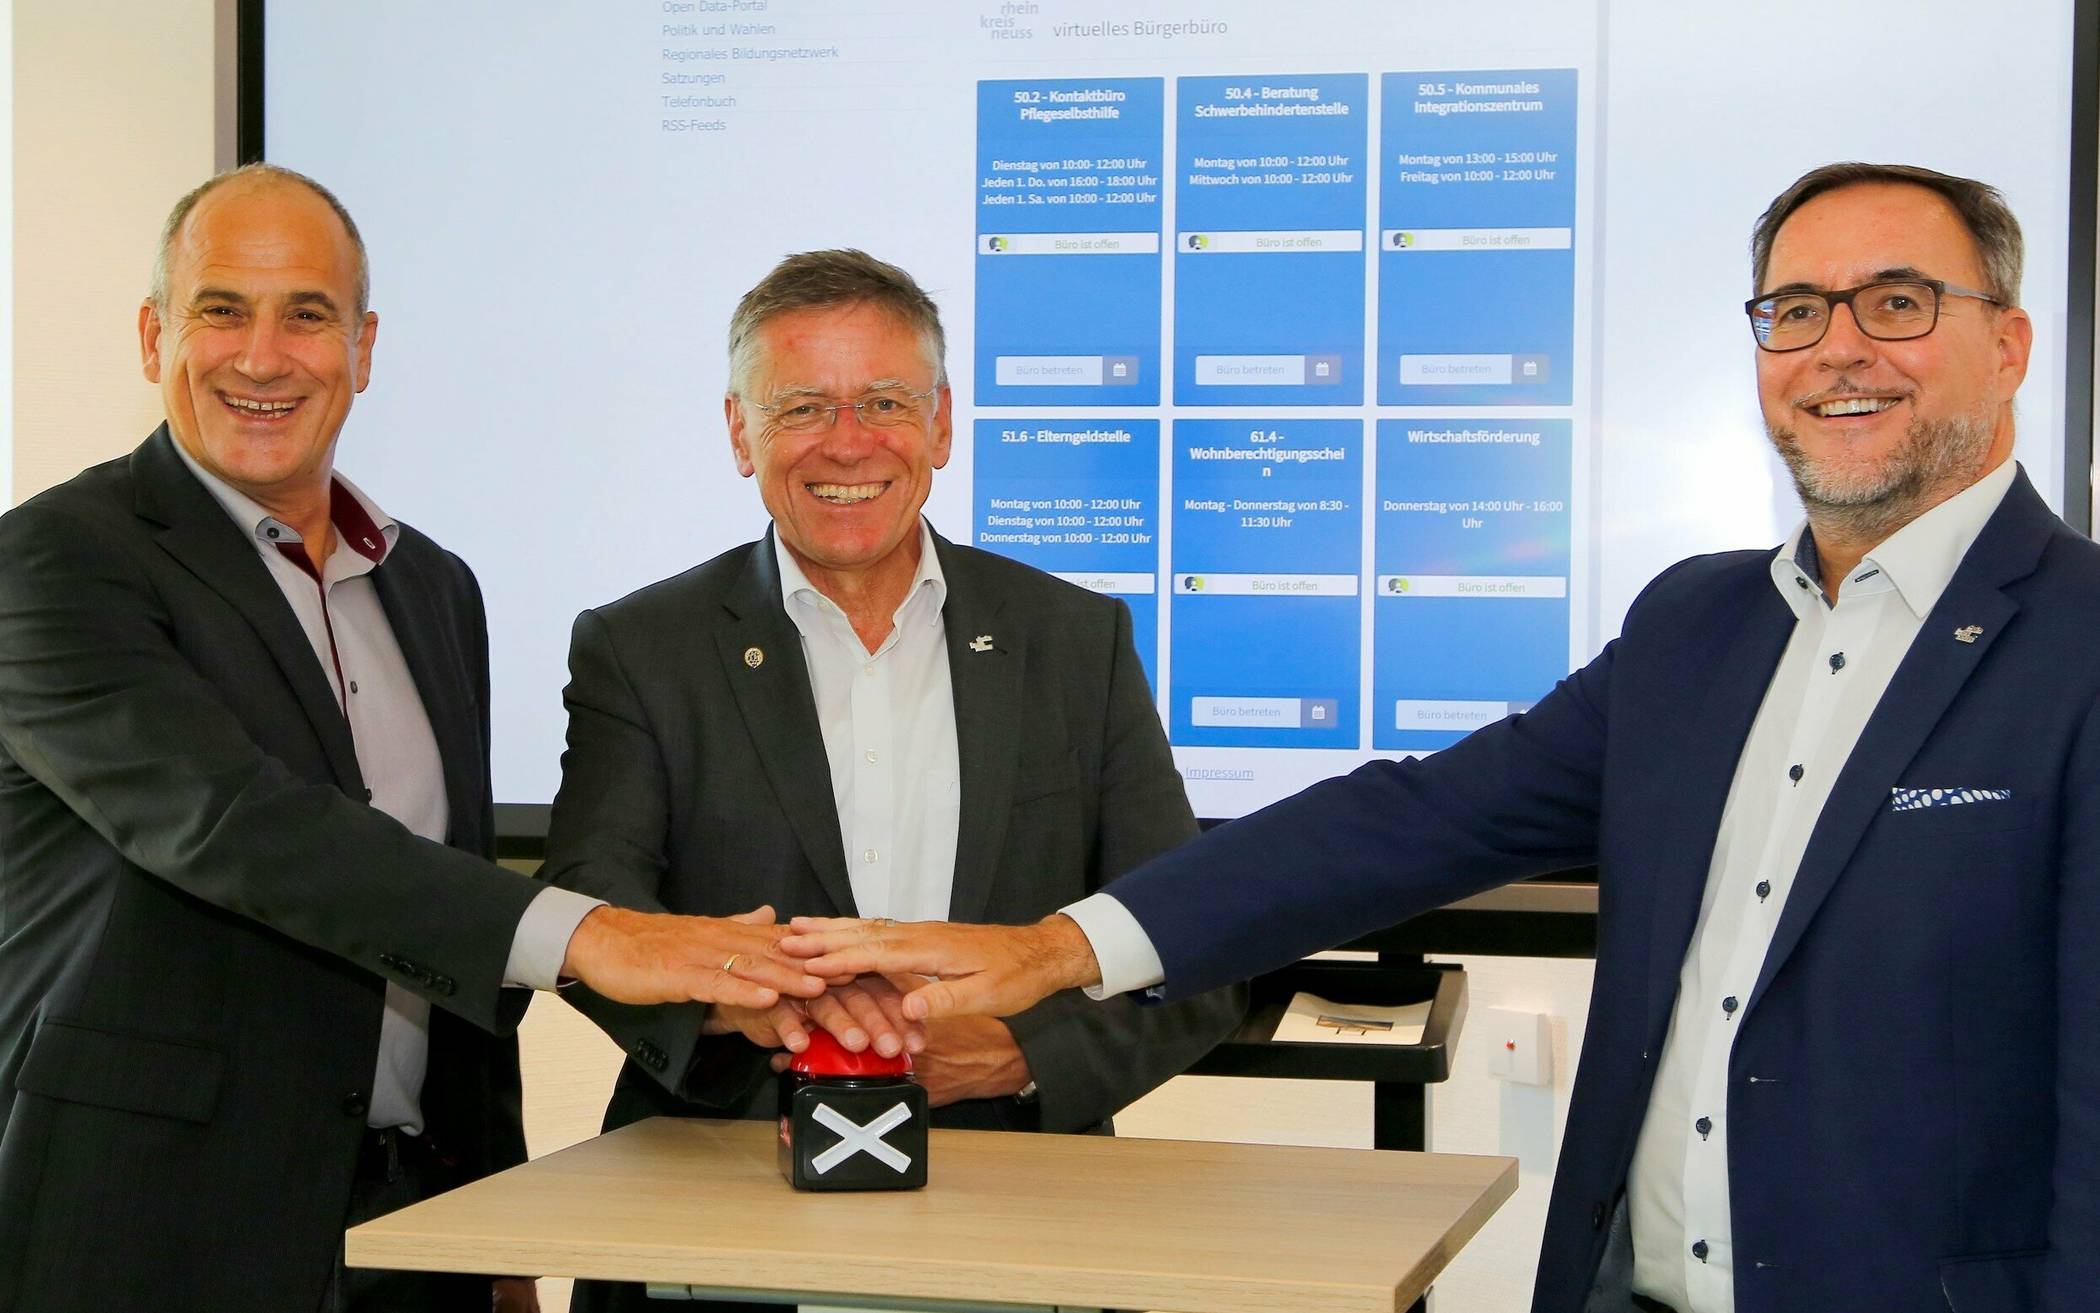  Landrat Hans-Jürgen Petrauschke (Mitte), IT-Kreisdezernent Harald Vieten (rechts) und Markus Brungs, Geschäftsführer der ACP Köln, die die technischen Voraussetzungen für das neue Bürgerbüro geschaffen hatte, beim Start des virtuellen Bürgerbüros im September 2021. 